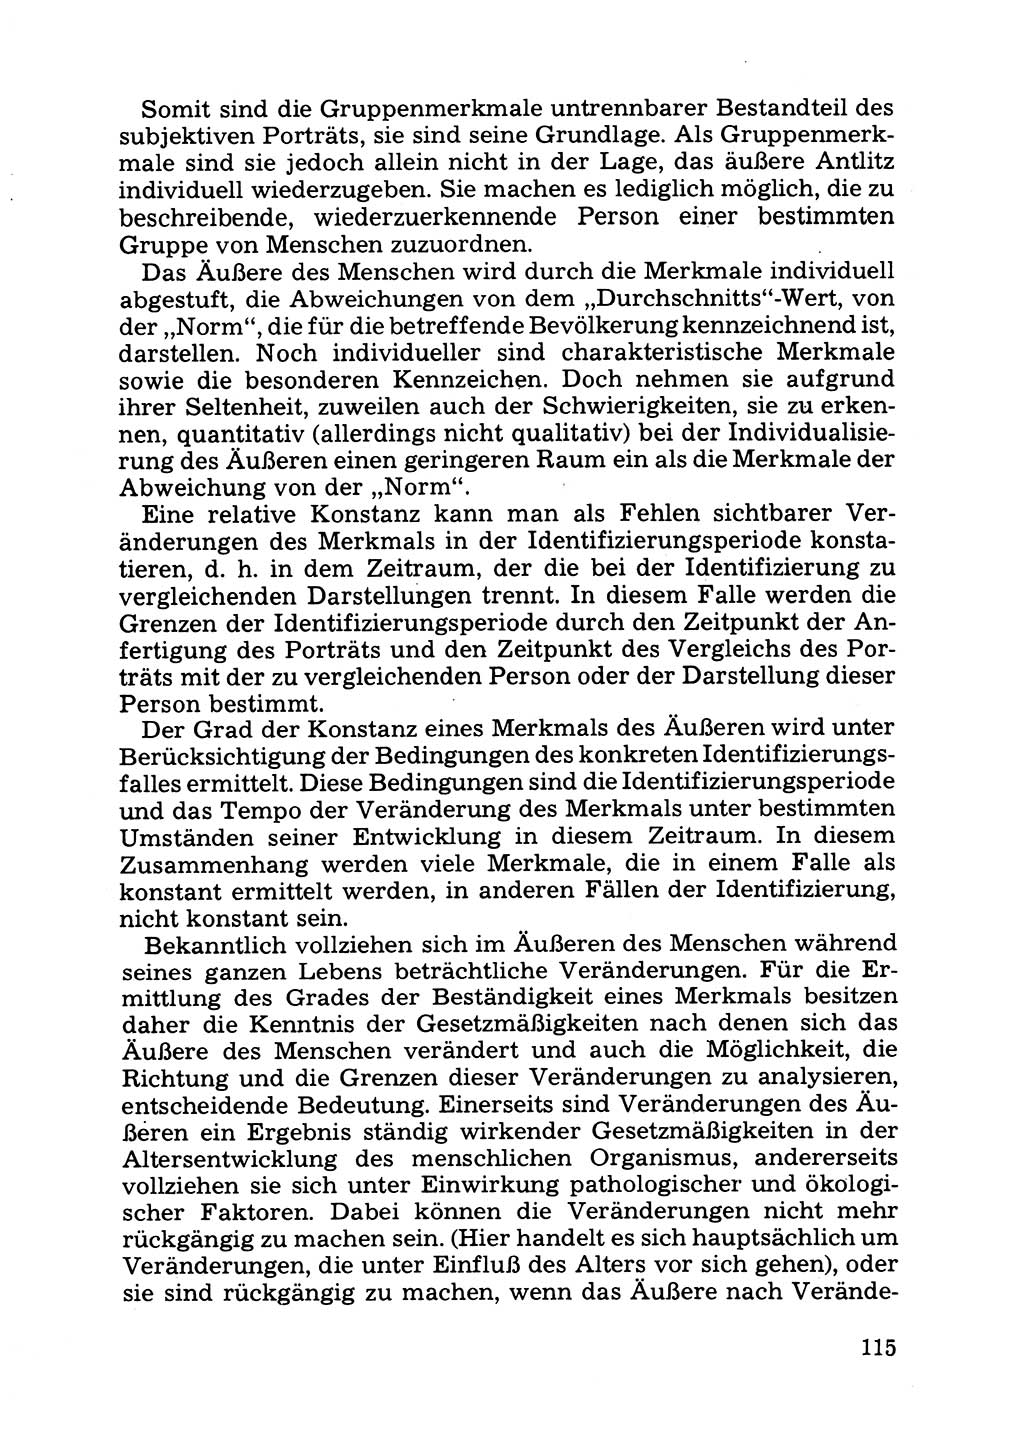 Das subjektive Porträt [Deutsche Demokratische Republik (DDR)] 1981, Seite 115 (Subj. Port. DDR 1981, S. 115)